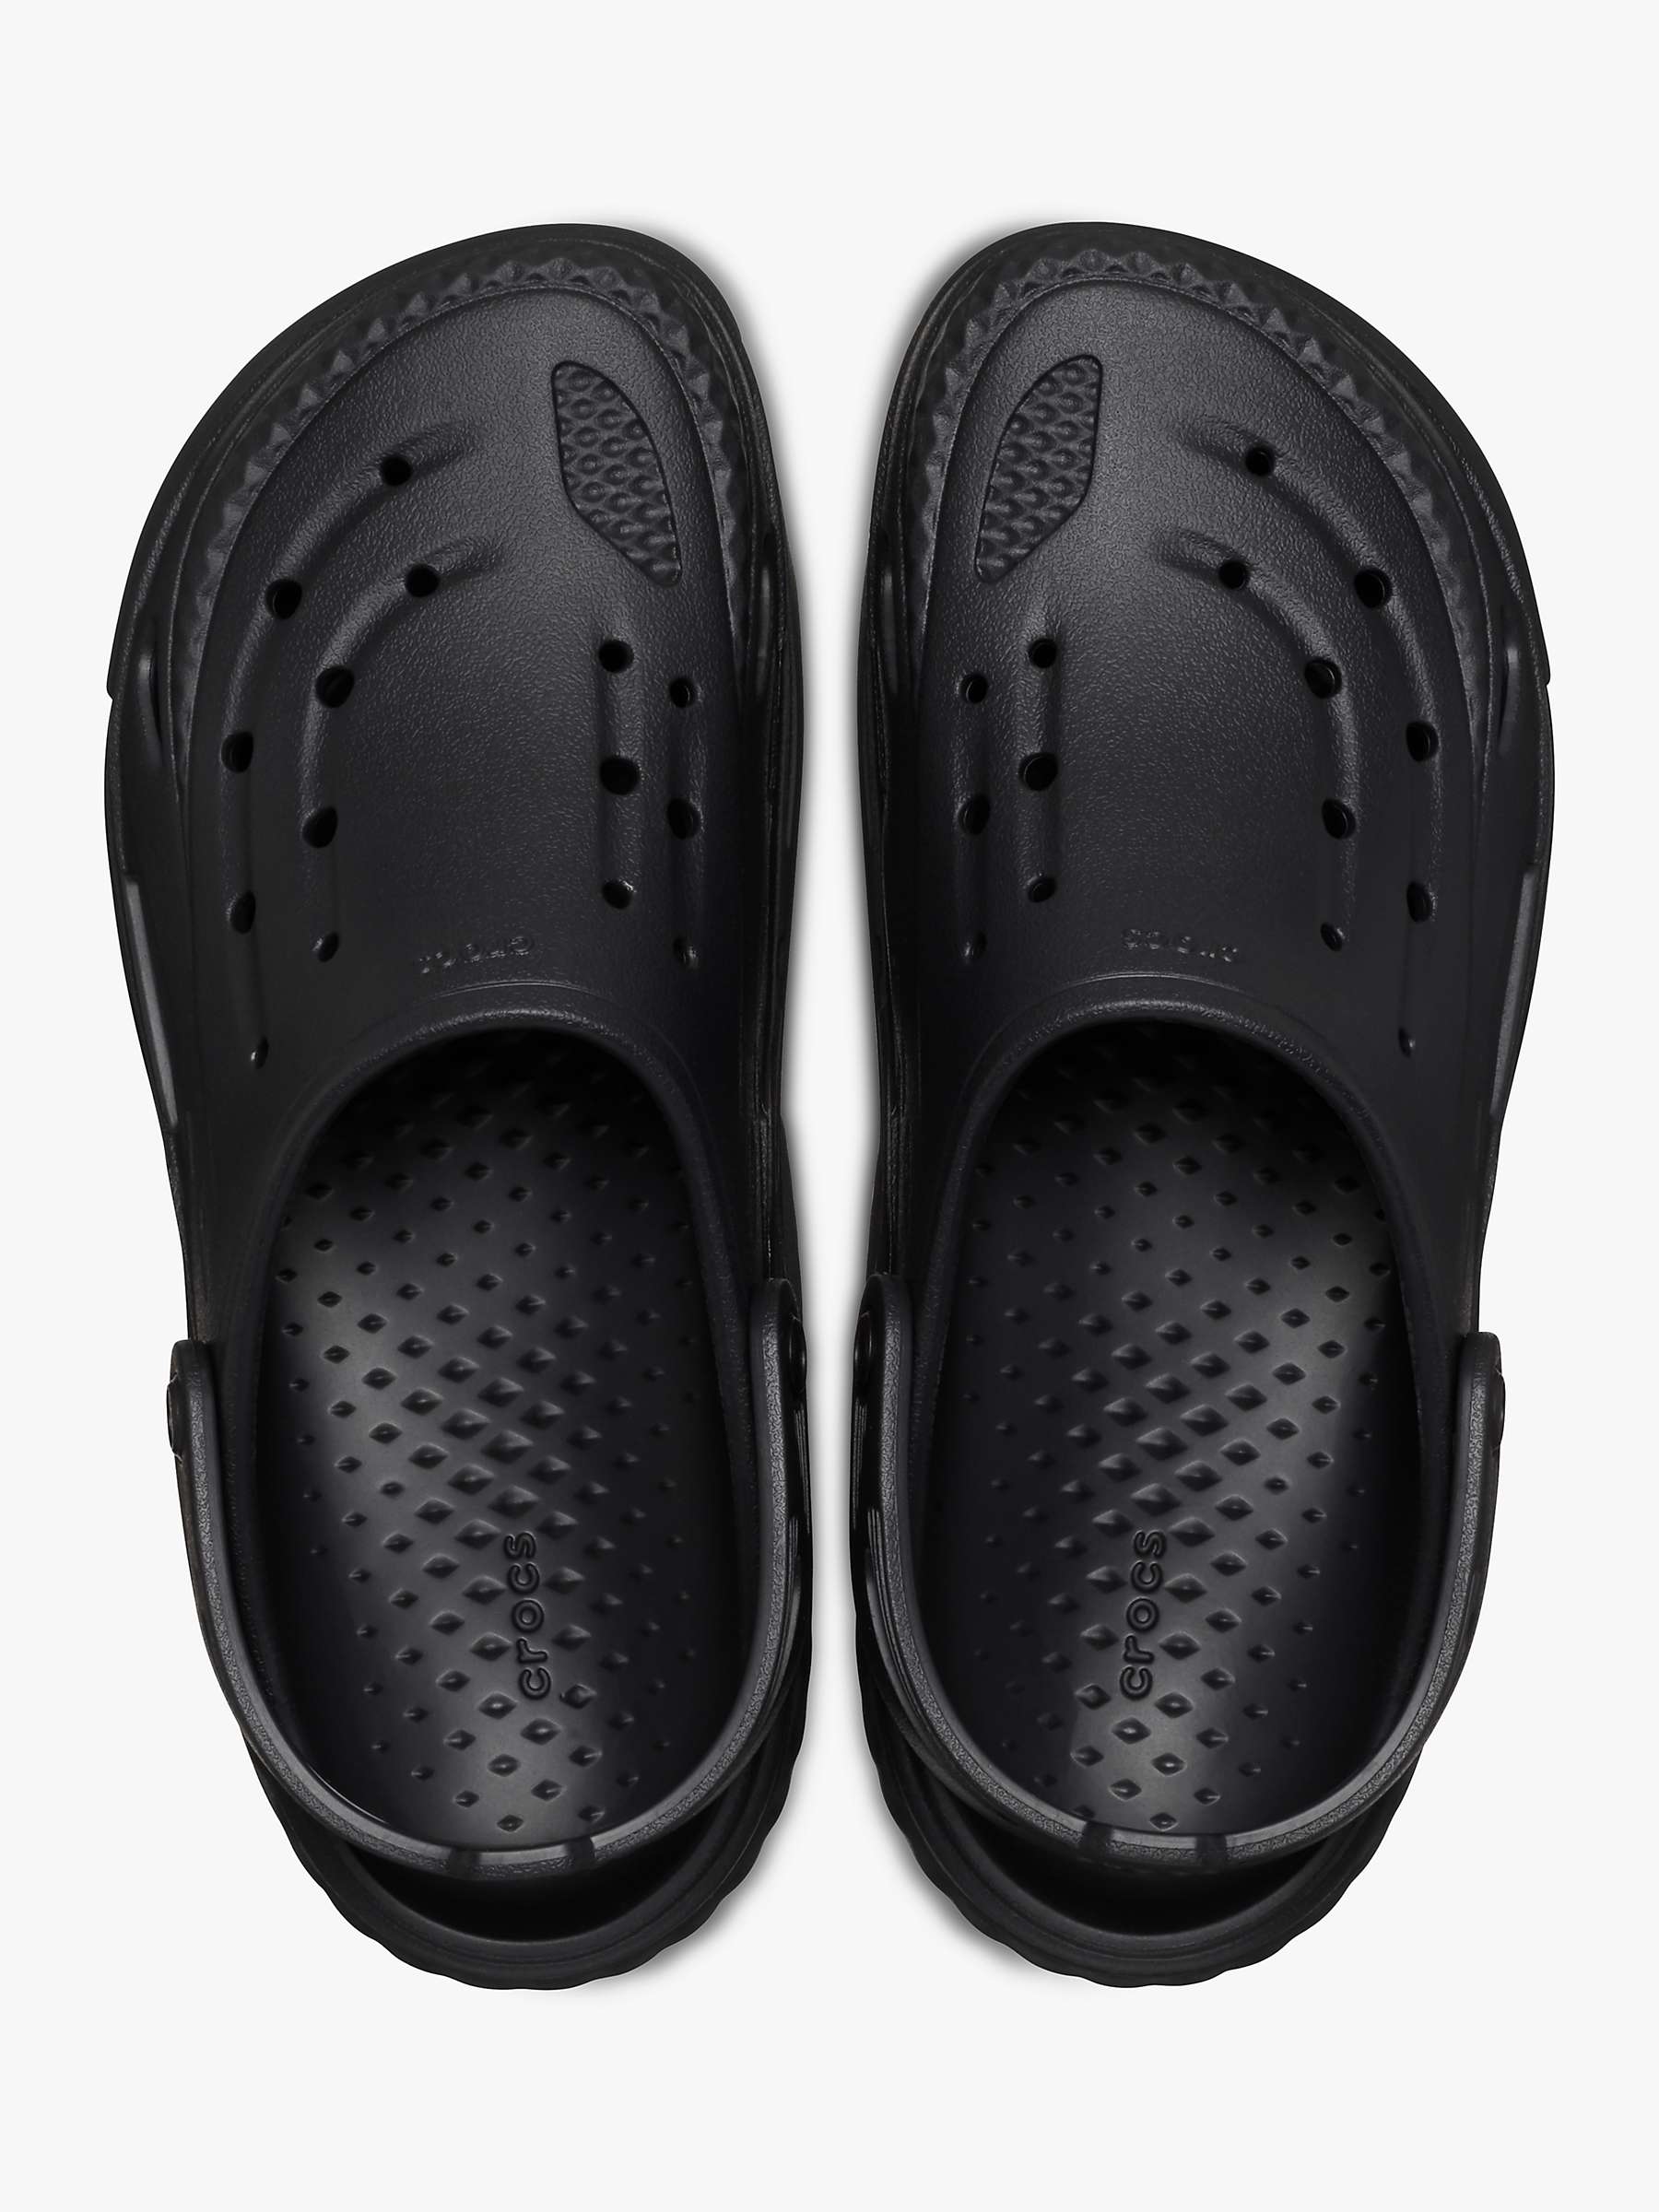 Buy Crocs Off Grid Clog, Black Online at johnlewis.com